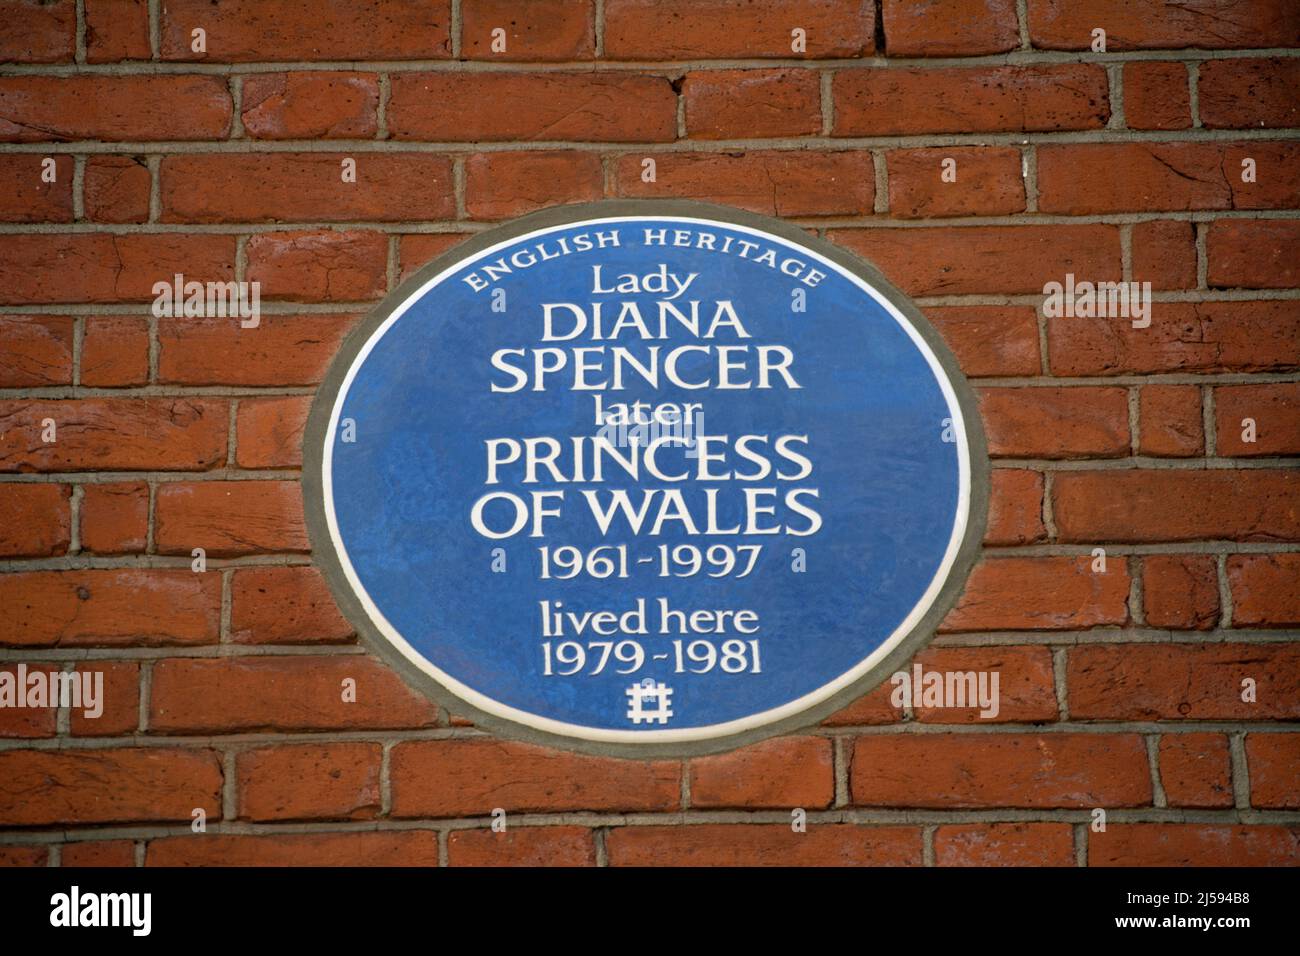 placa azul patrimonio inglés que marca una casa de la señora diana spencer, más tarde princesa de gales, en el sur de kensington, londres, inglaterra Foto de stock